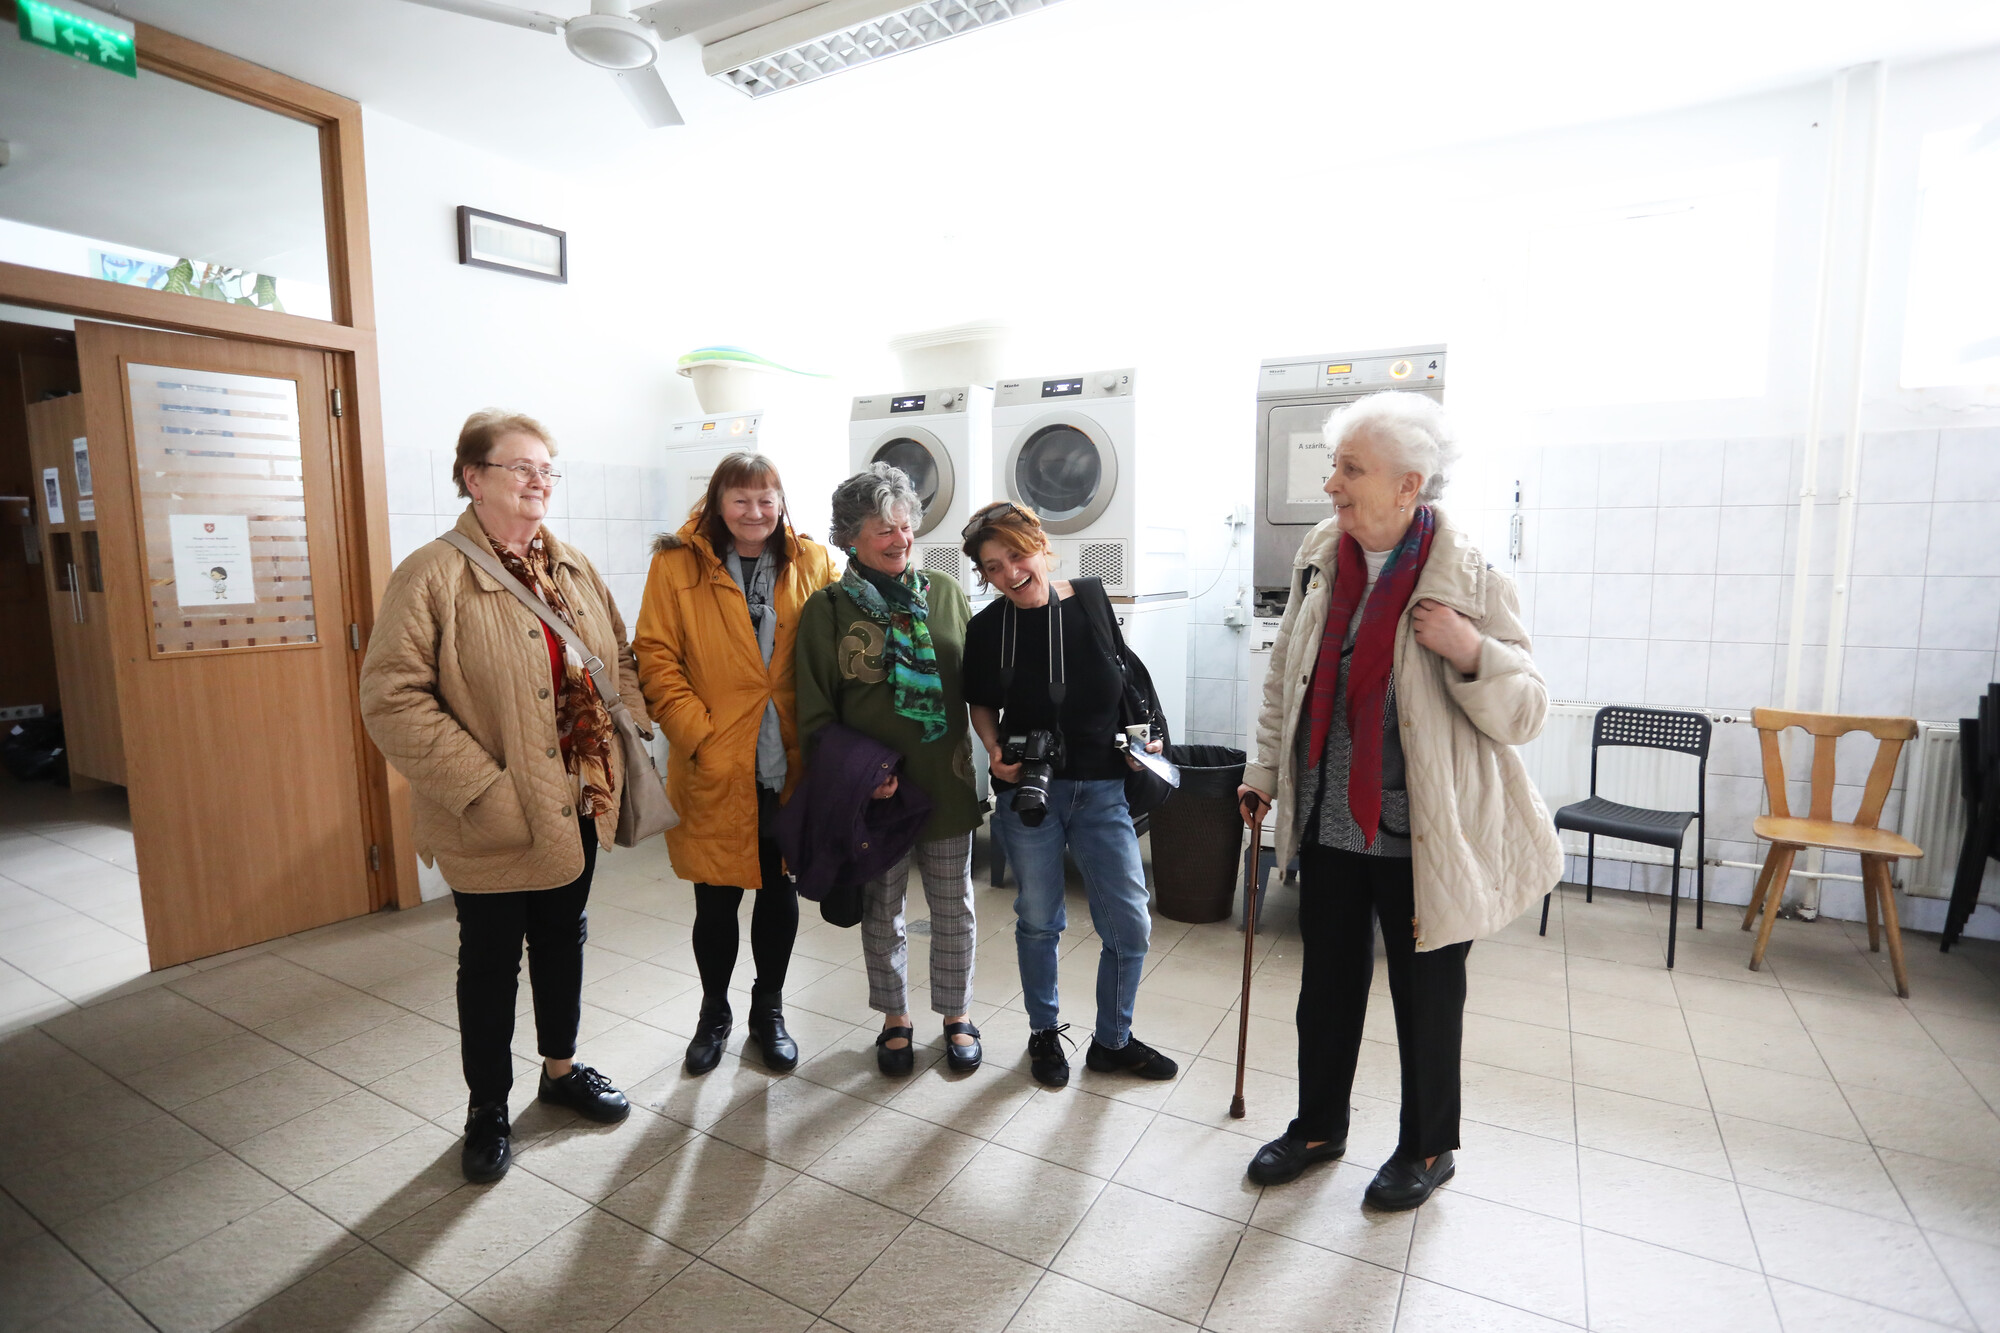 Látogatók a Miklós utcai hajléktalanellátó központ mosodájában. Fotó: Kovács Bence